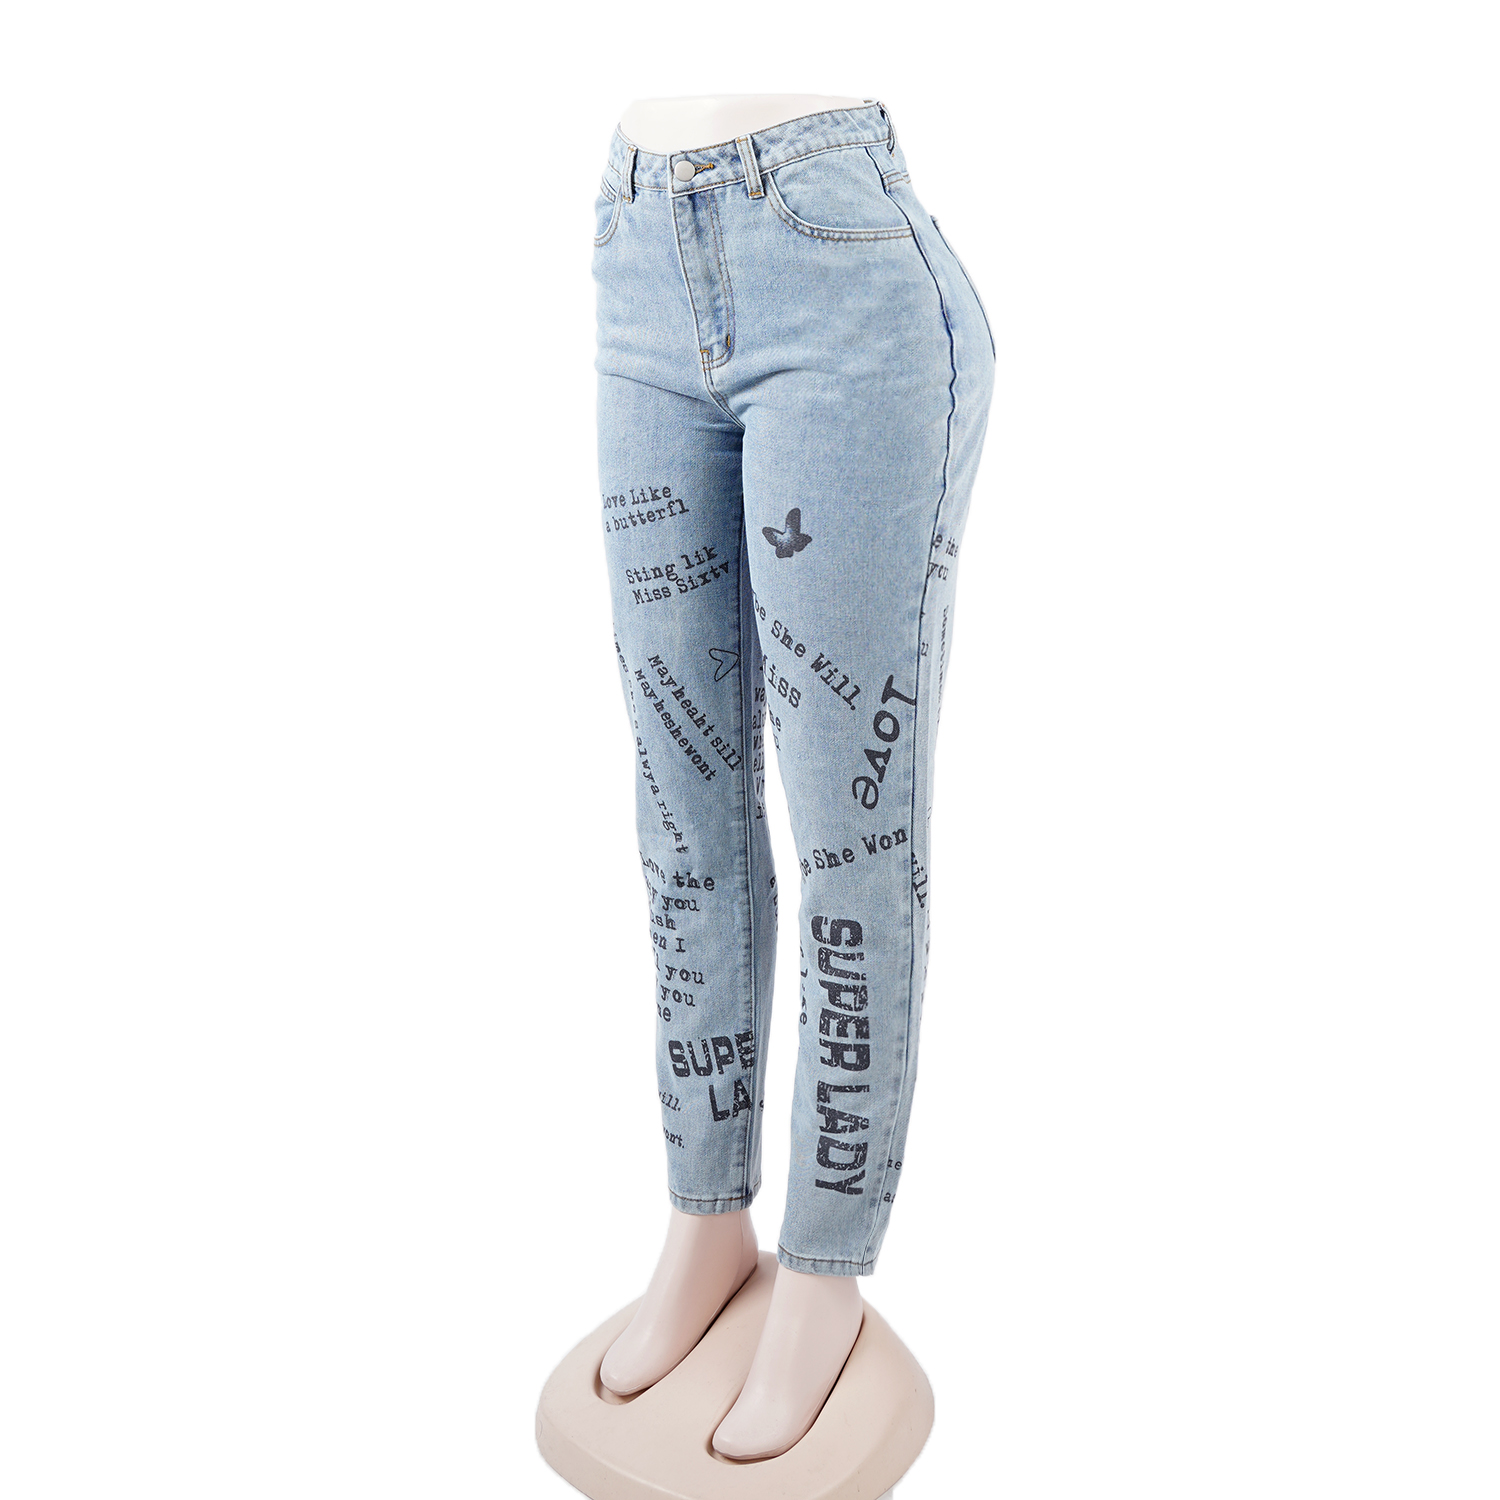 SKYKINGDOM OEM design women jeans factory wholesale lady pencil jeans light blue printed streetwear denim jeans